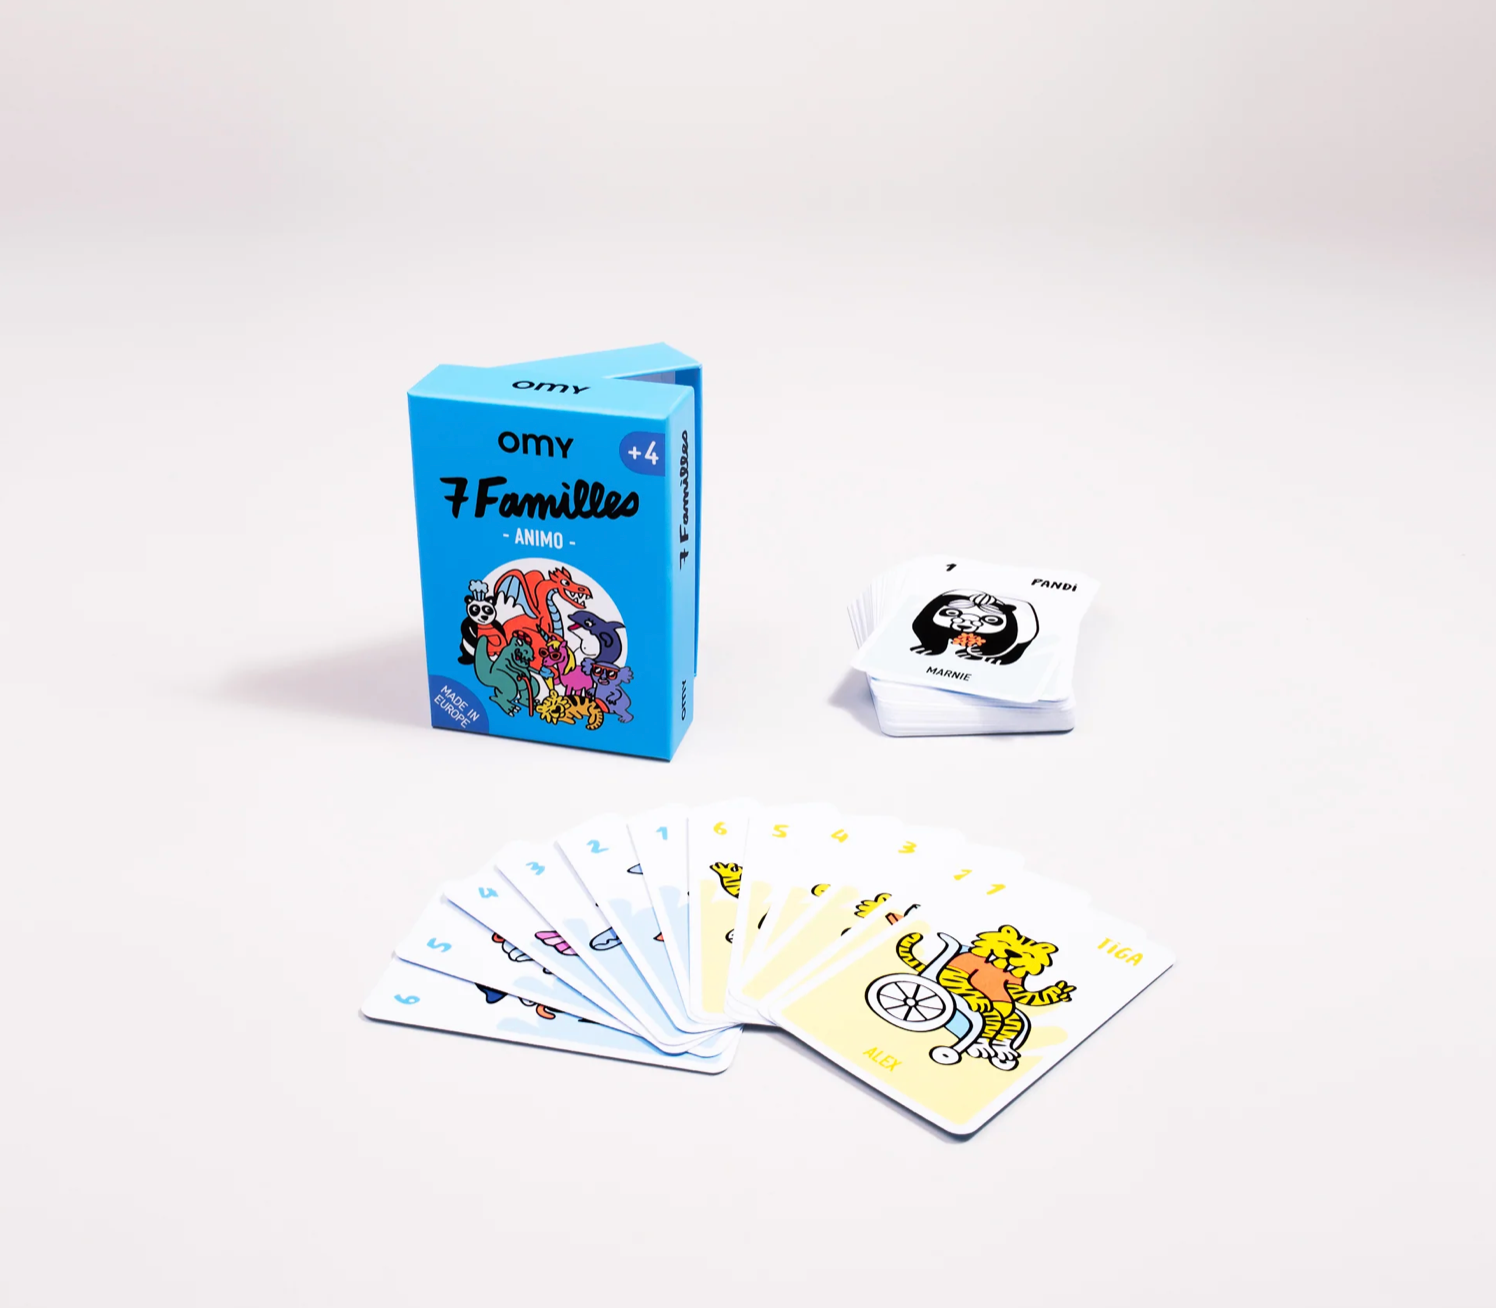 Game of 7 families - Animo